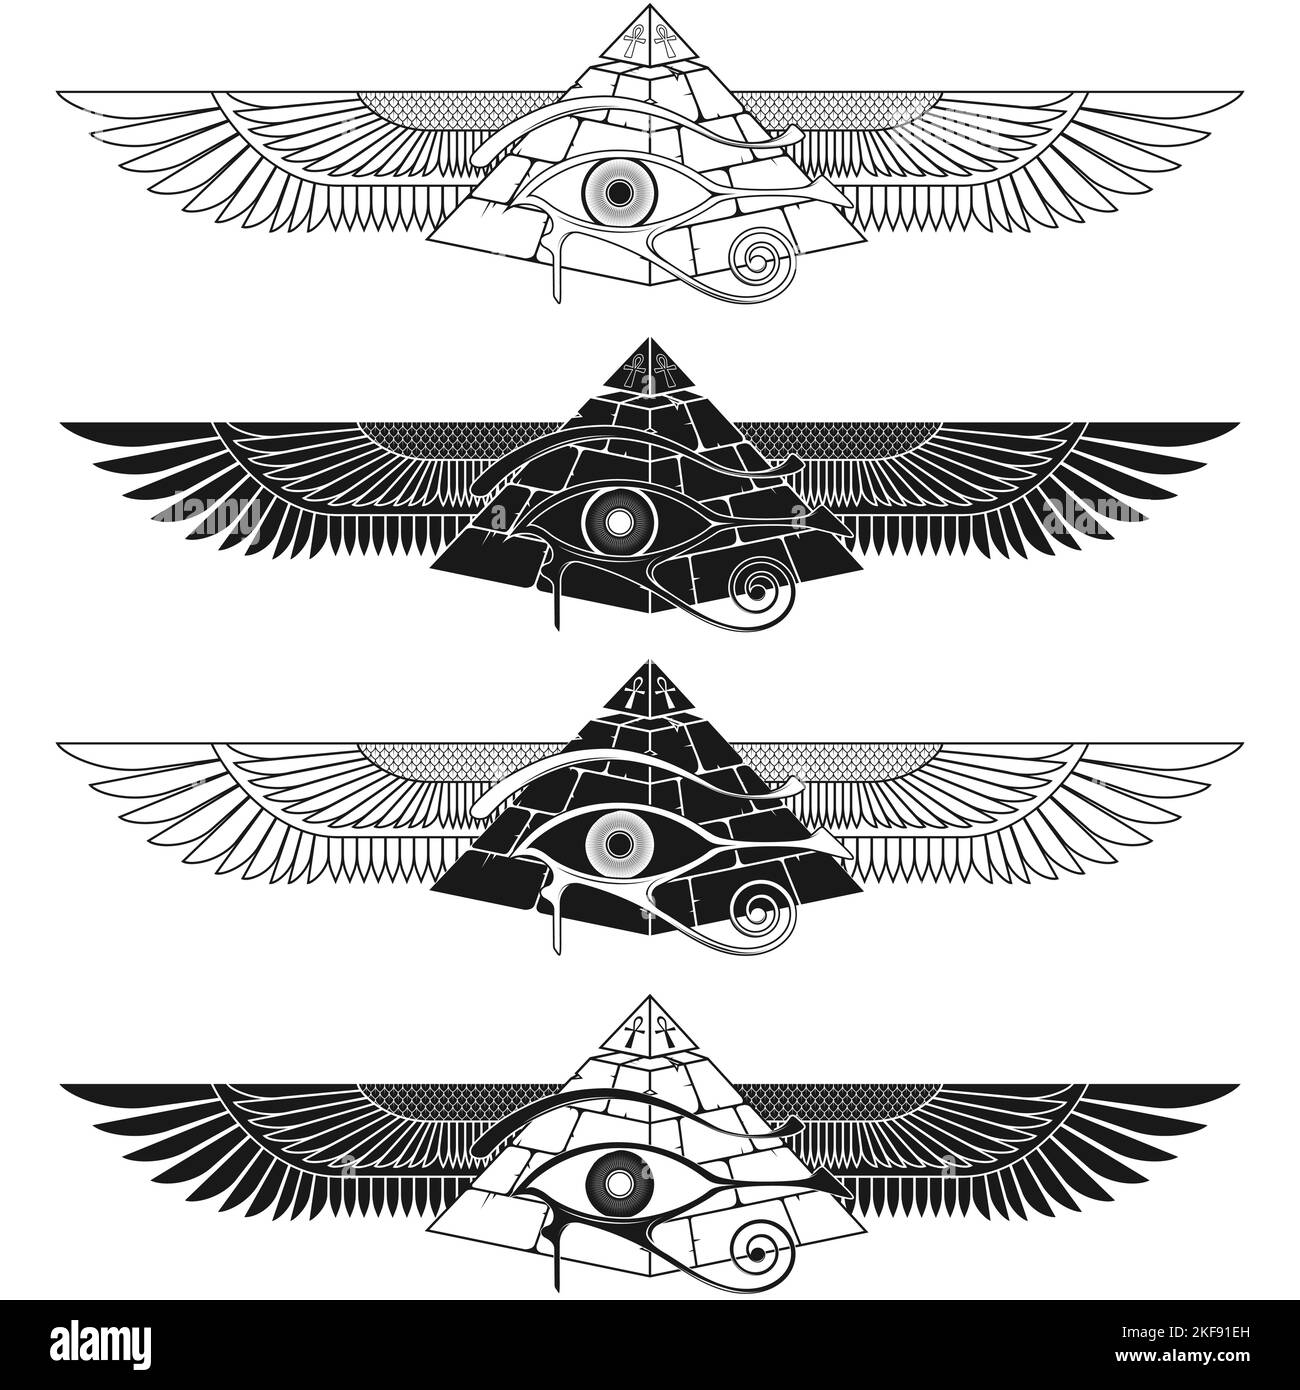 Geflügelte Pyramide Vektor-Design mit Auge des horus, alte ägyptische Pyramide mit Flügeln, geflügelte Pyramide, Auge des horus, ankh Kreuz Stock Vektor